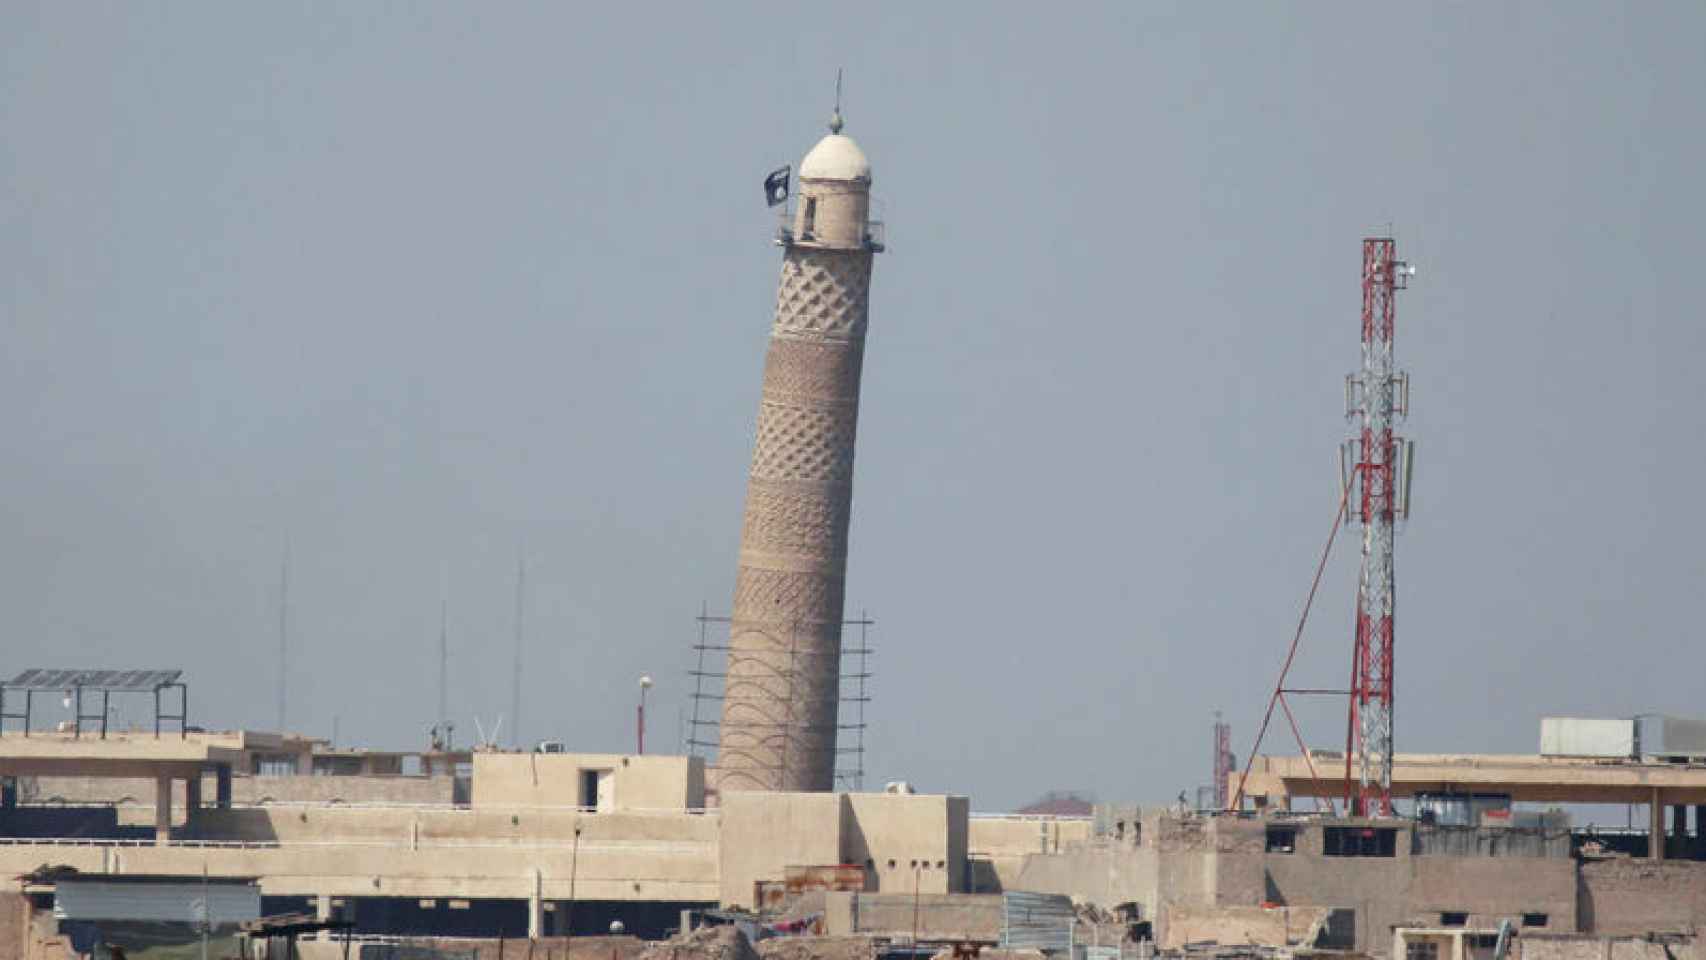 Minarete de la mezquita con la bandera de Estado Islámico tras destruirla.